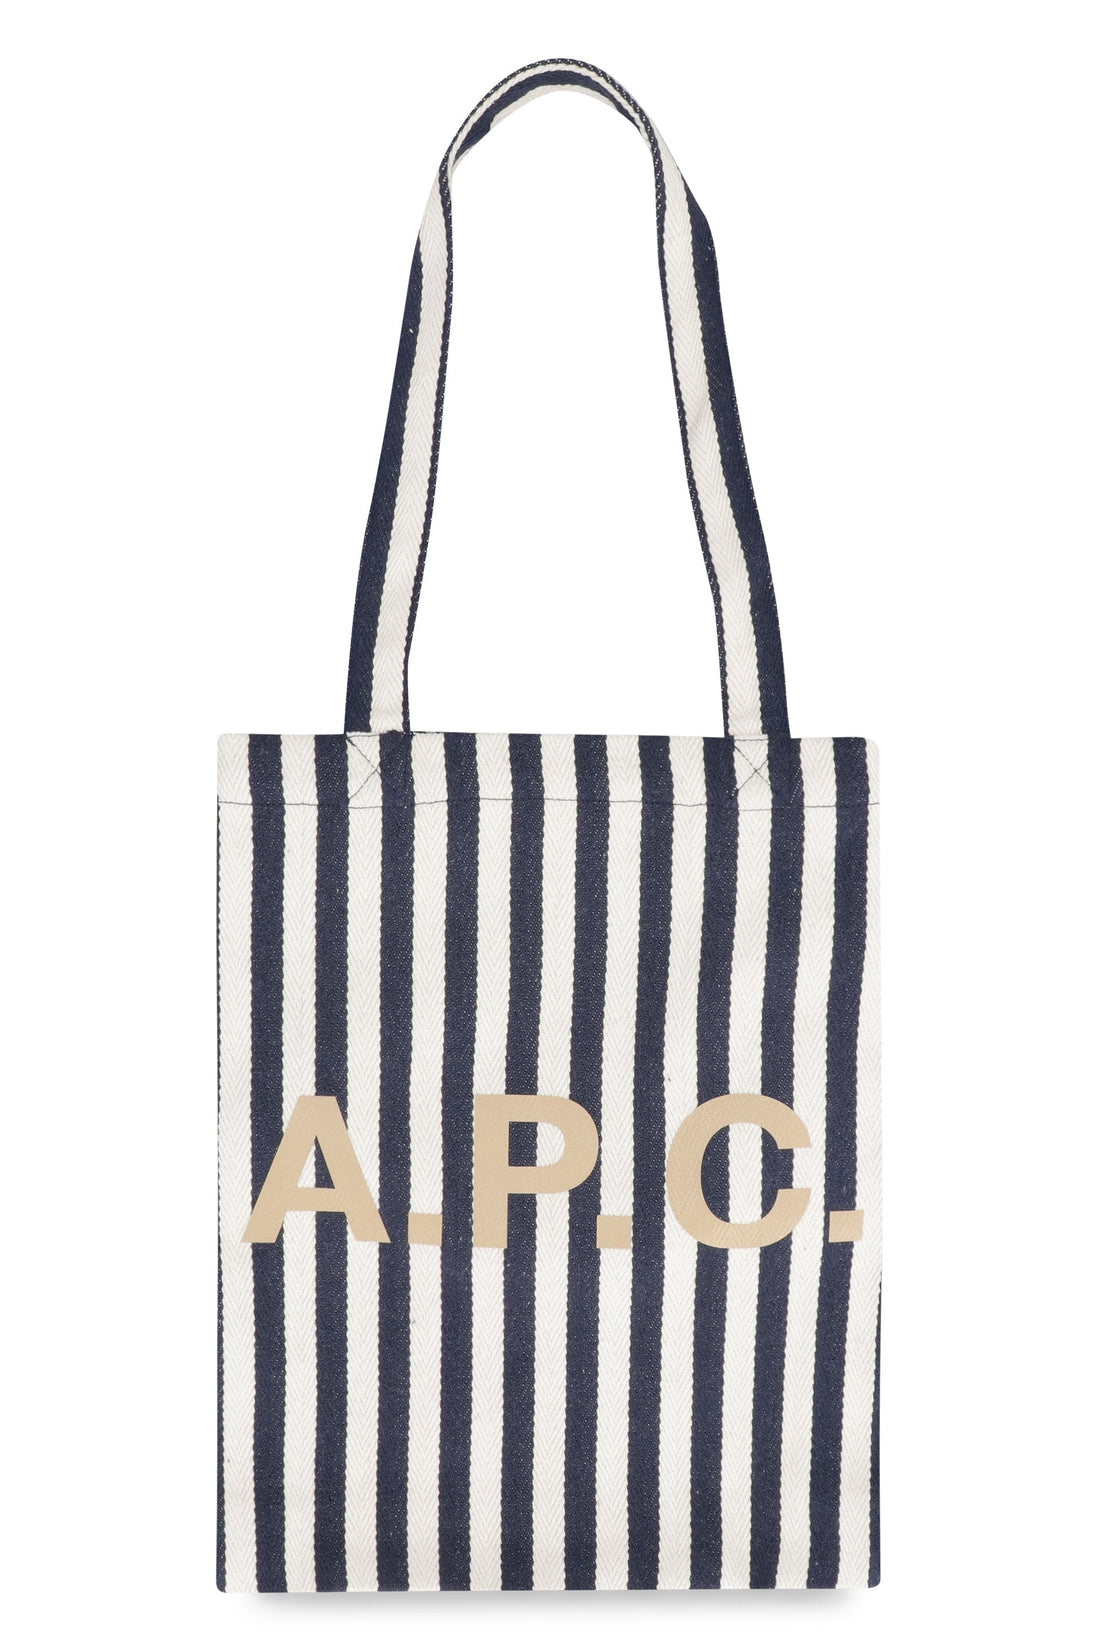 A.P.C.-OUTLET-SALE-Canvas tote bag-ARCHIVIST